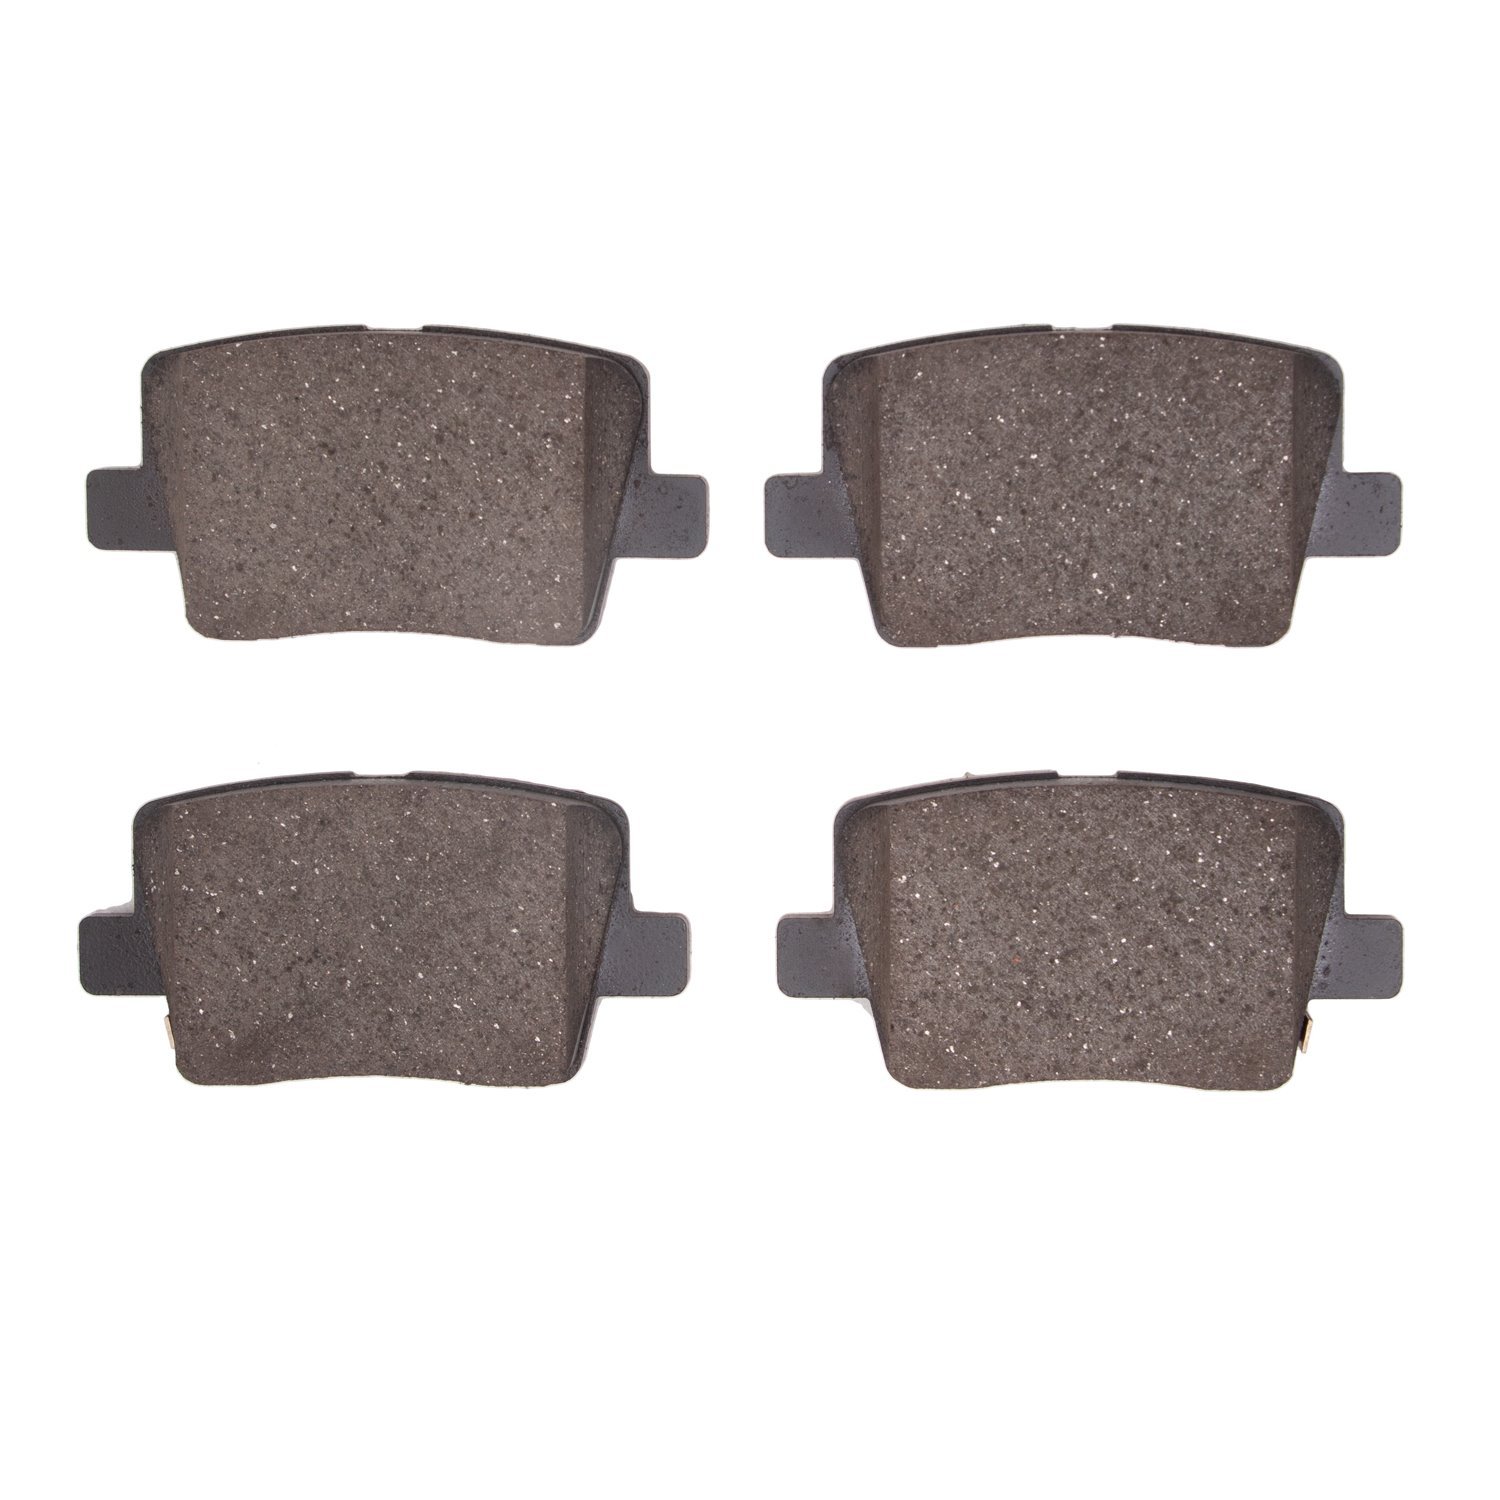 3000-Series Ceramic Brake Pads, Fits Select Kia/Hyundai/Genesis